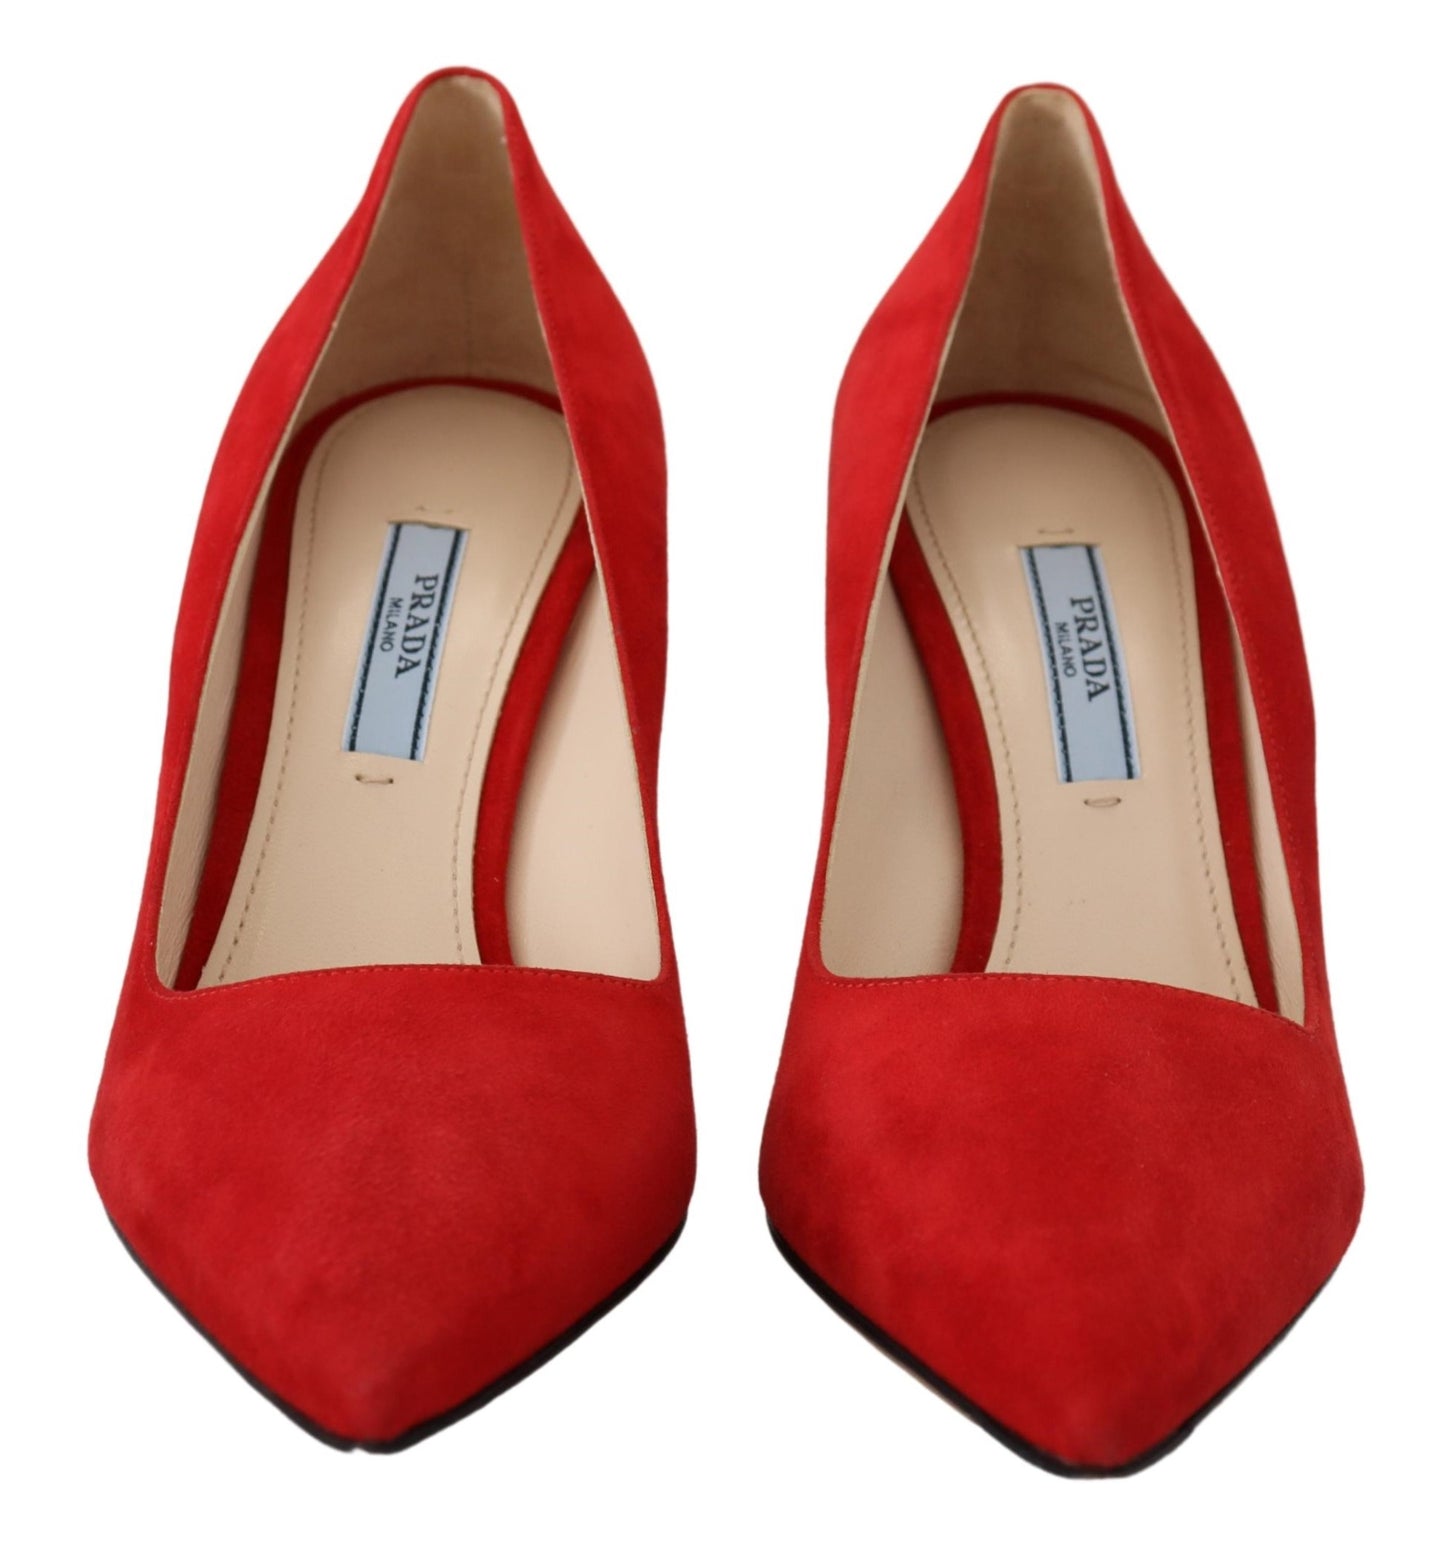 Red Suede Heels - Elegance Meets Comfort